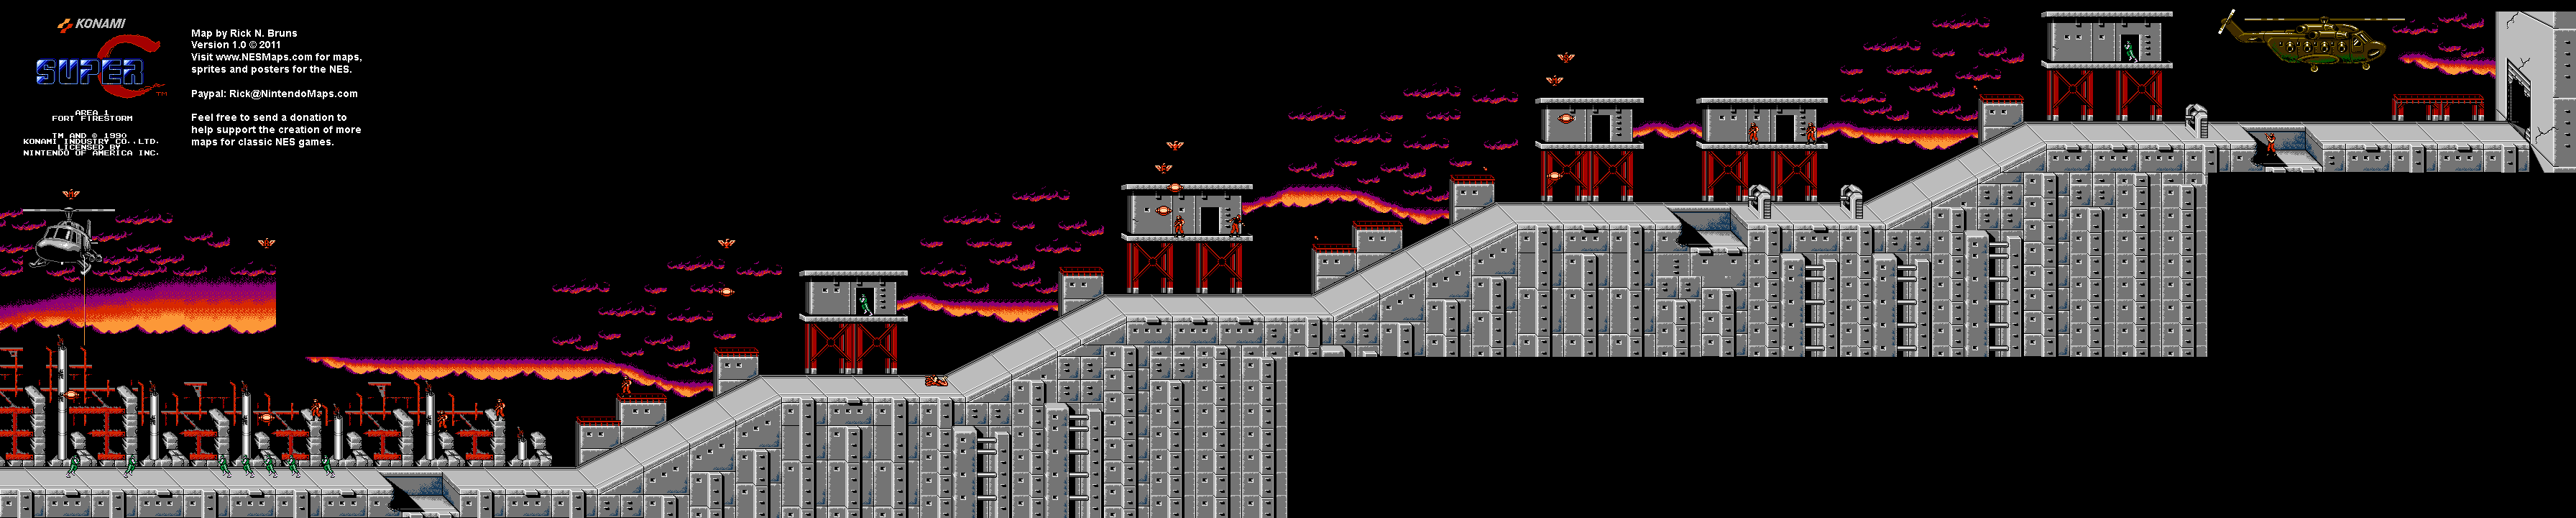 Super C - Area 1 - Nintendo NES Map